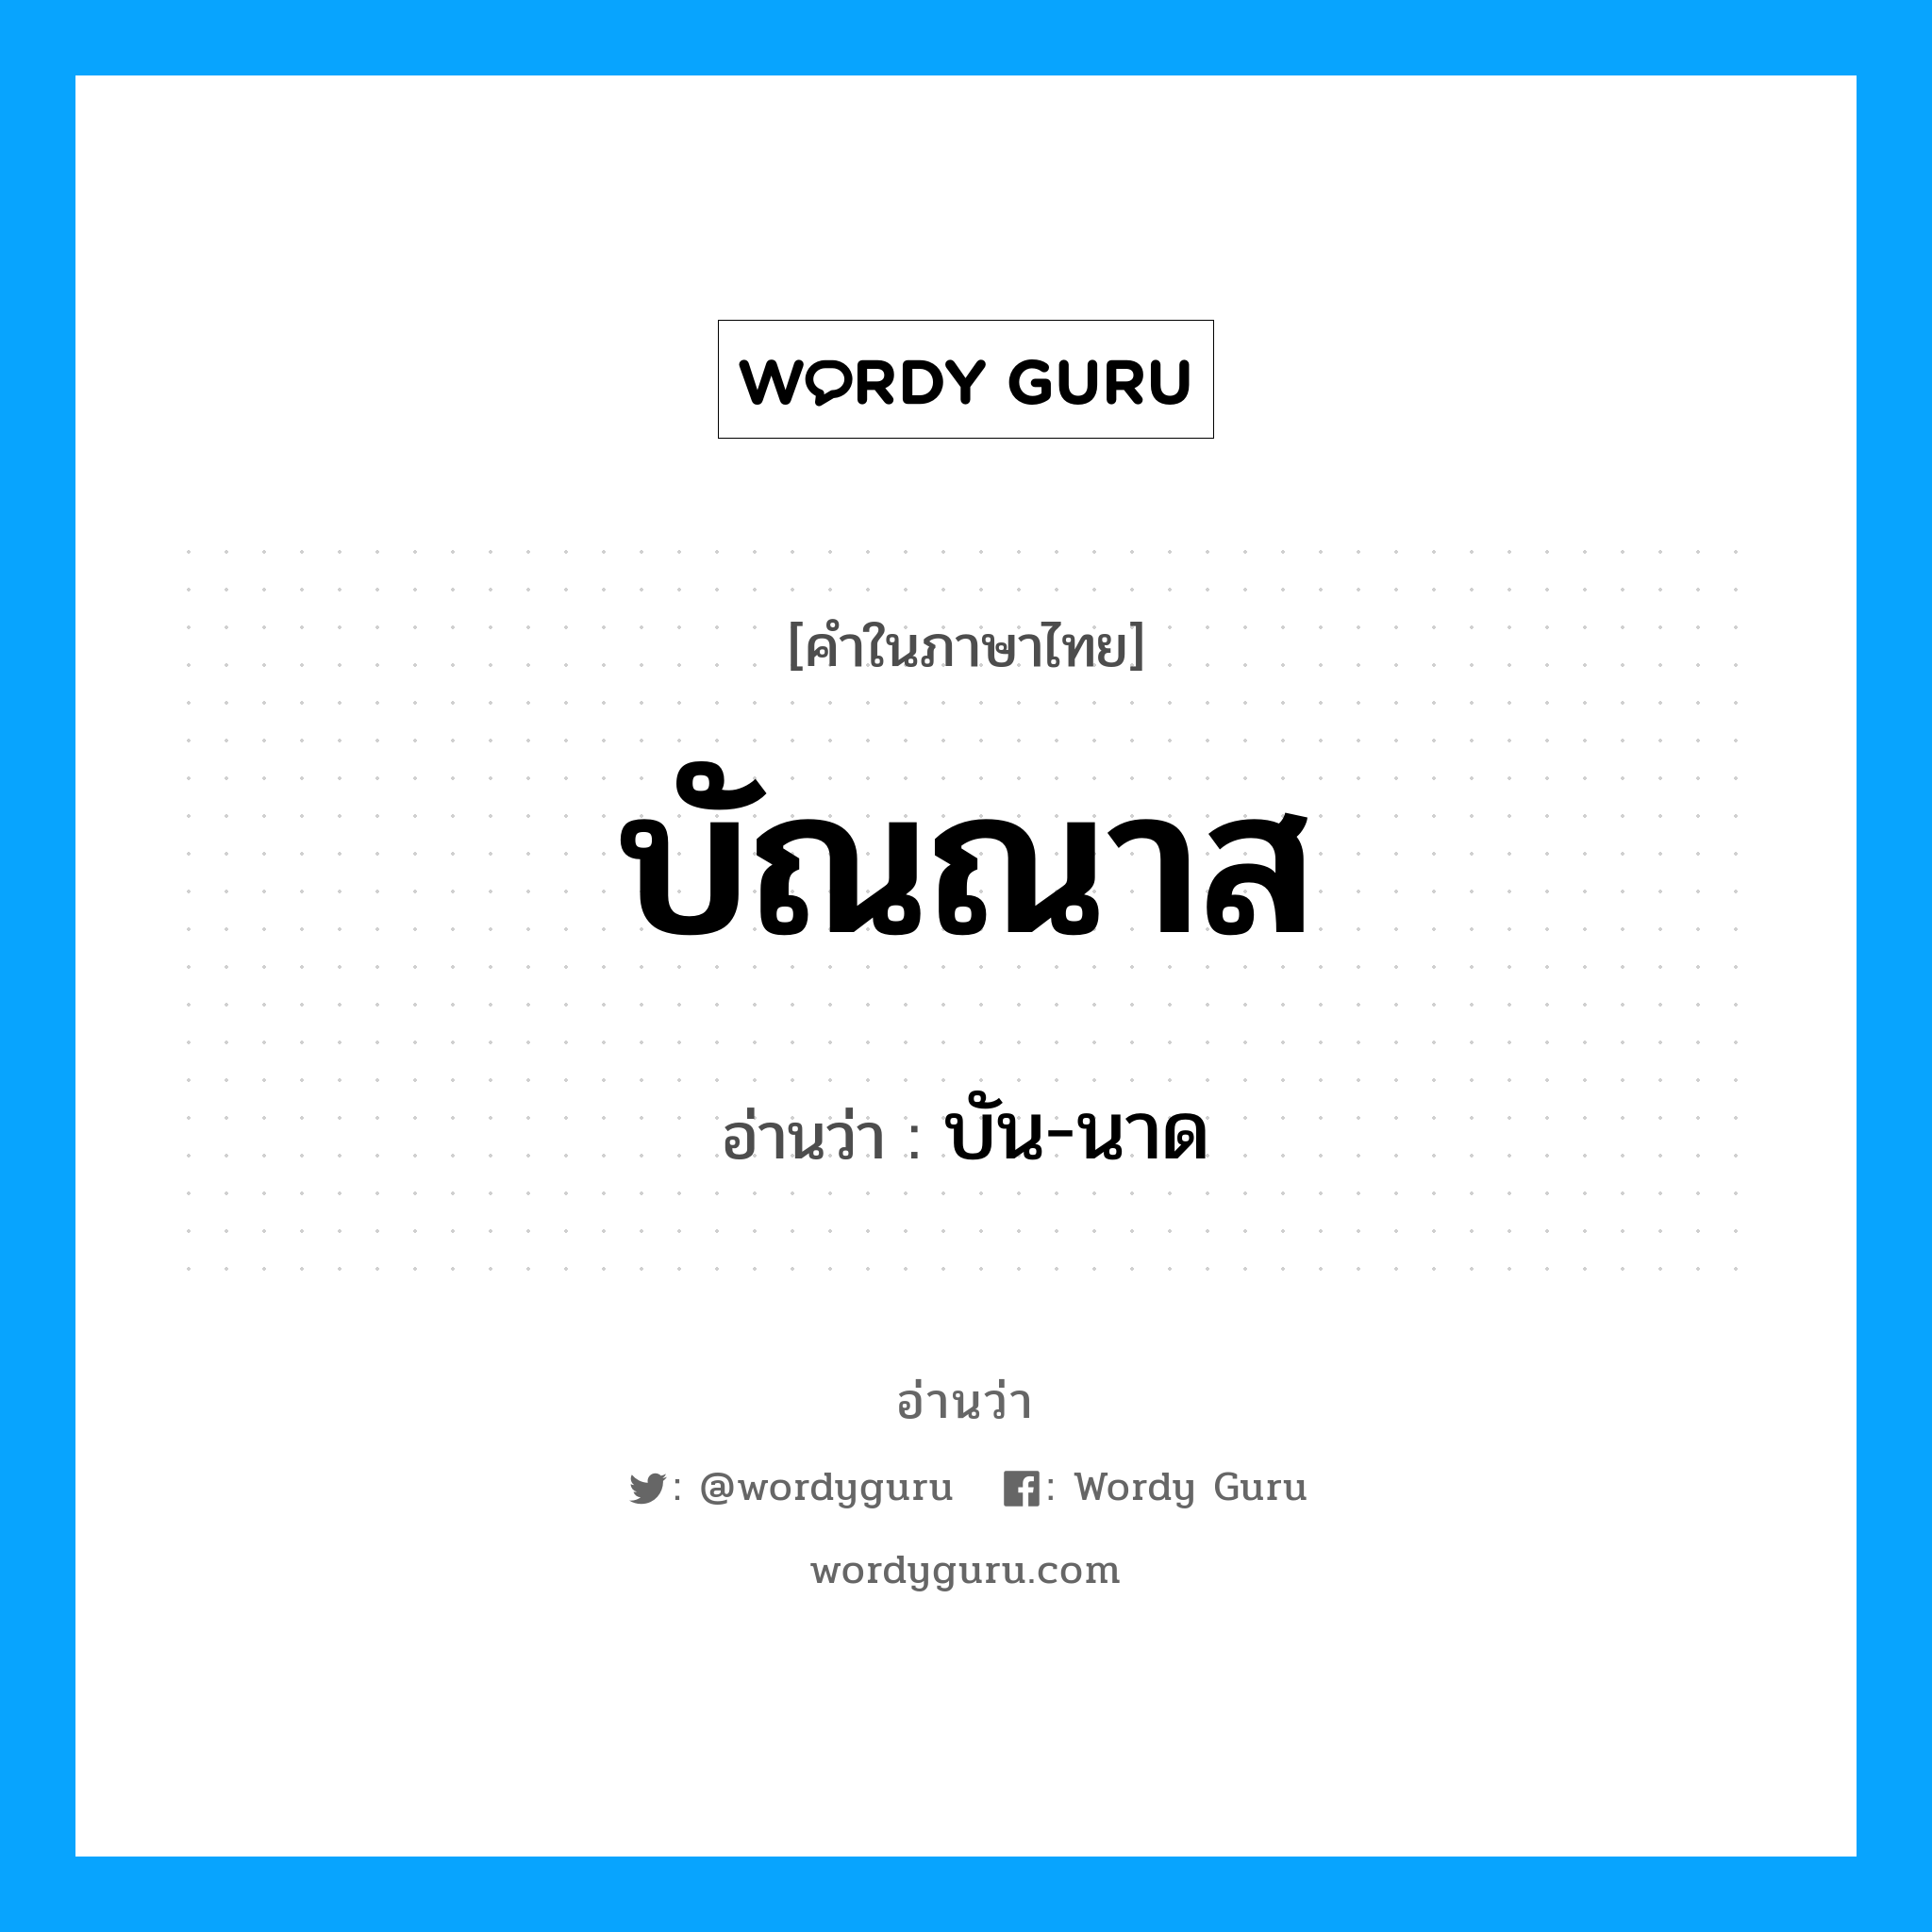 บัน-นาด เป็นคำอ่านของคำไหน?, คำในภาษาไทย บัน-นาด อ่านว่า บัณณาส